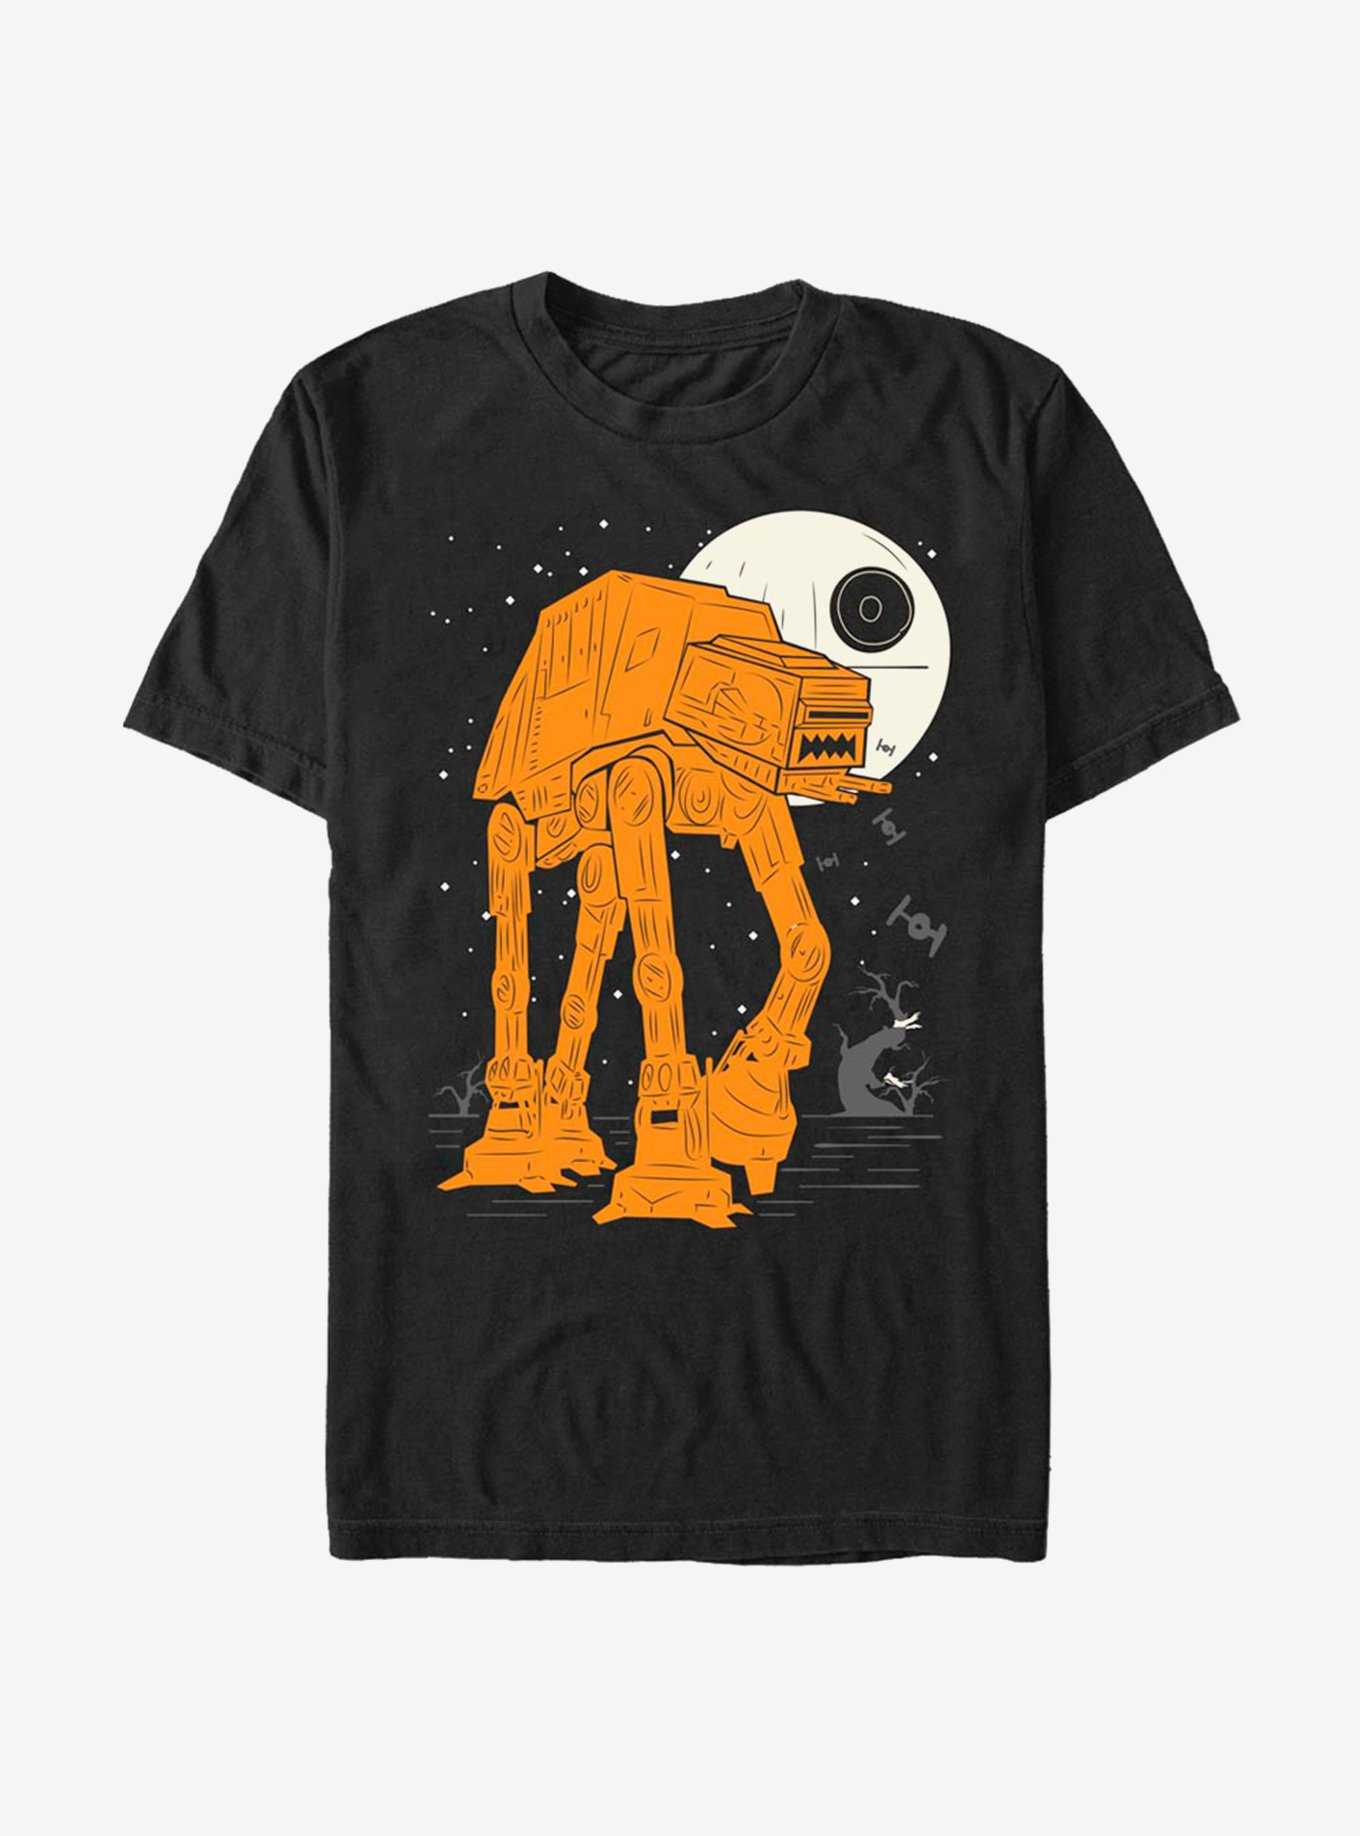 Star Wars AT-AT Walker Full Moon T-Shirt, , hi-res